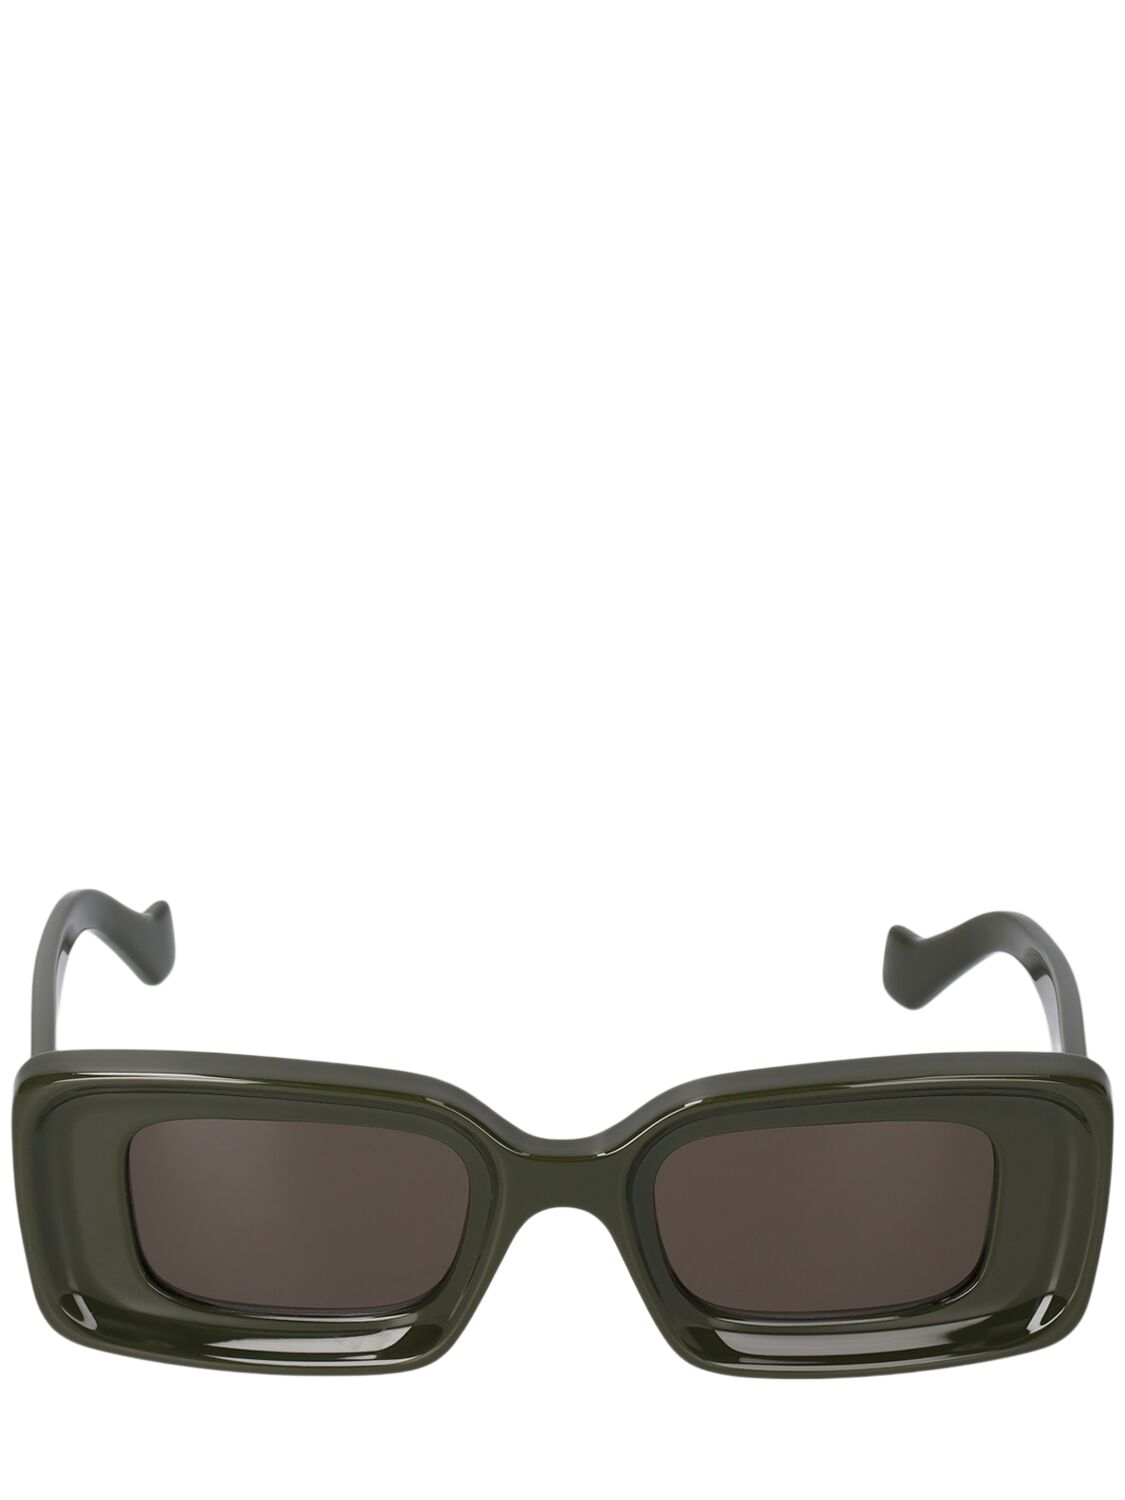 Image of Anagram Squared Sunglasses